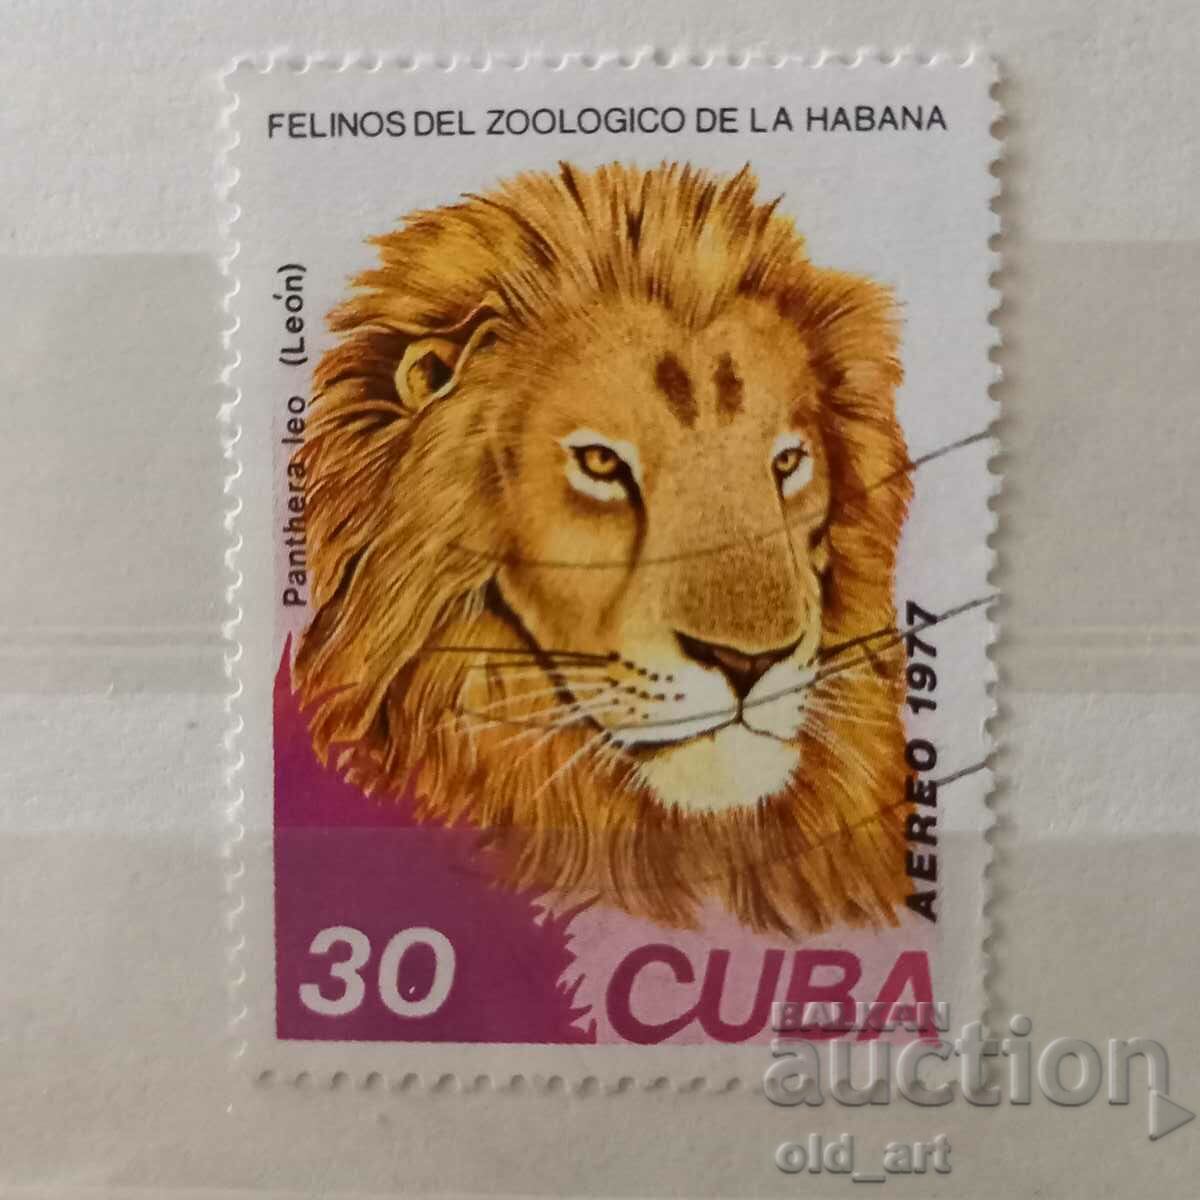 Пощенска марка - Куба,  Лъвове